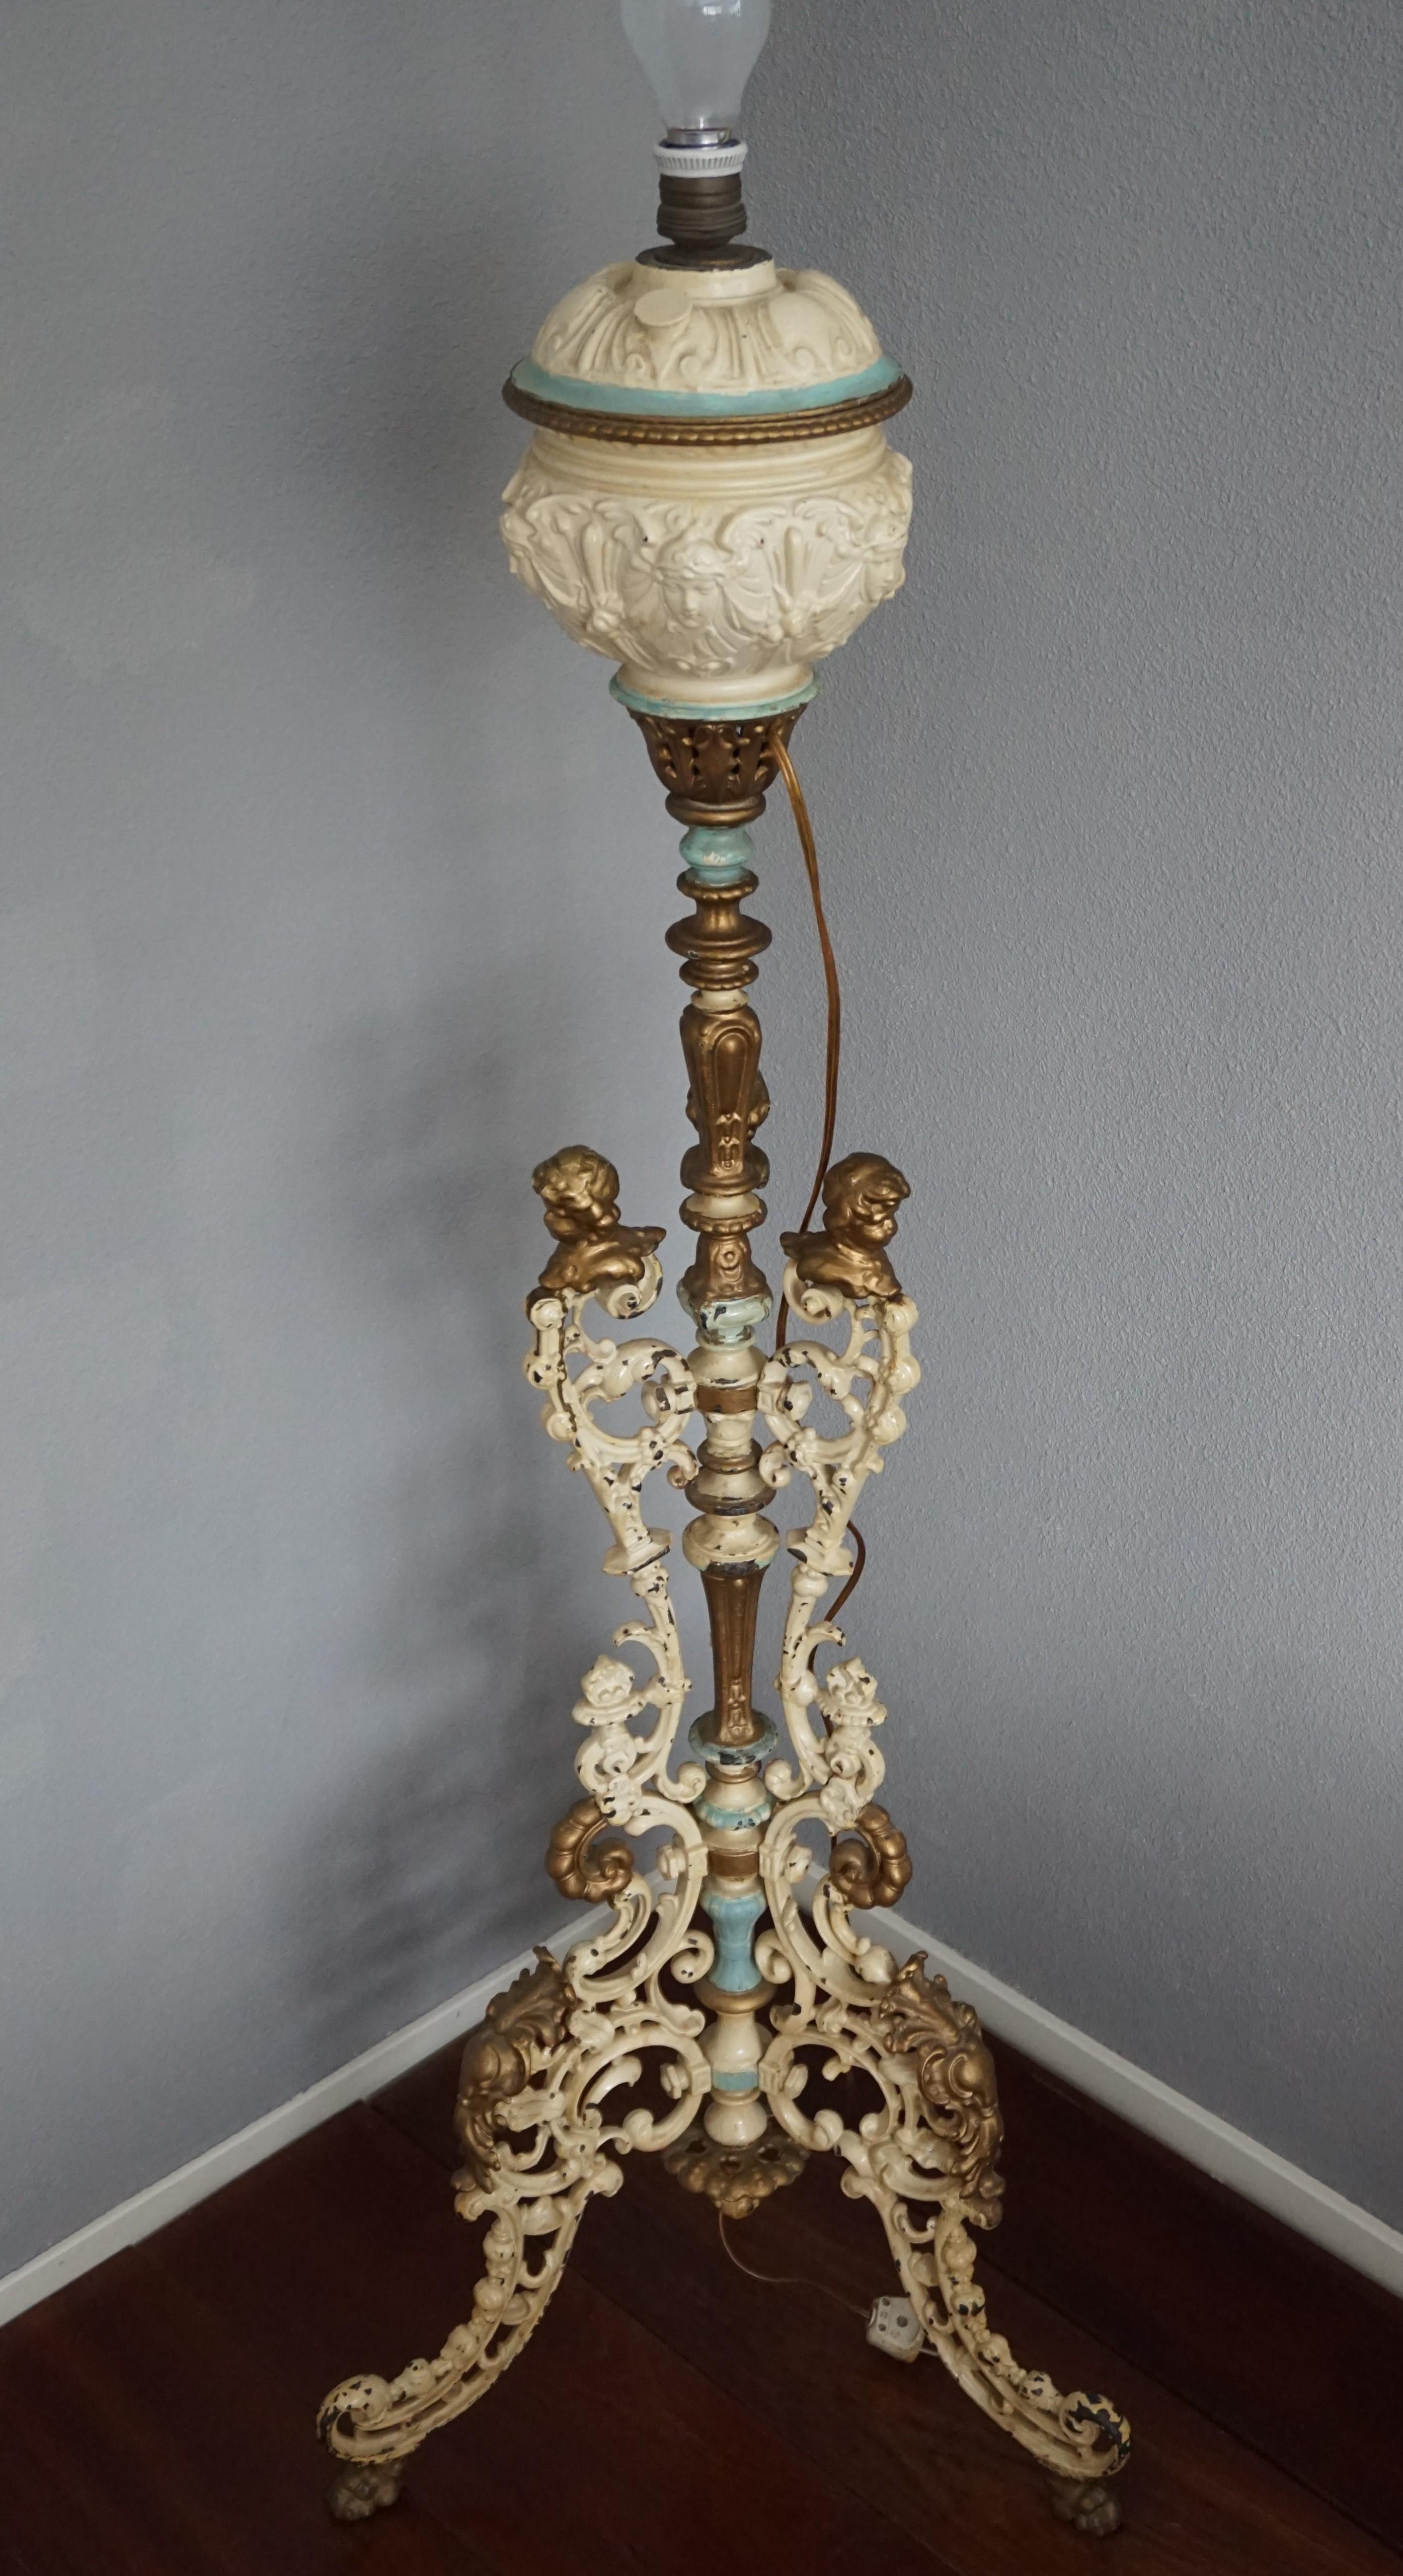 Rare et très décoratif, lampadaire artisanal (ancienne lampe à huile).

Si vous avez un appétit pour les antiquités rares, ornées et hautement décoratives, alors ce rare lampadaire pourrait bientôt orner votre maison. Grâce à sa base trépied assez